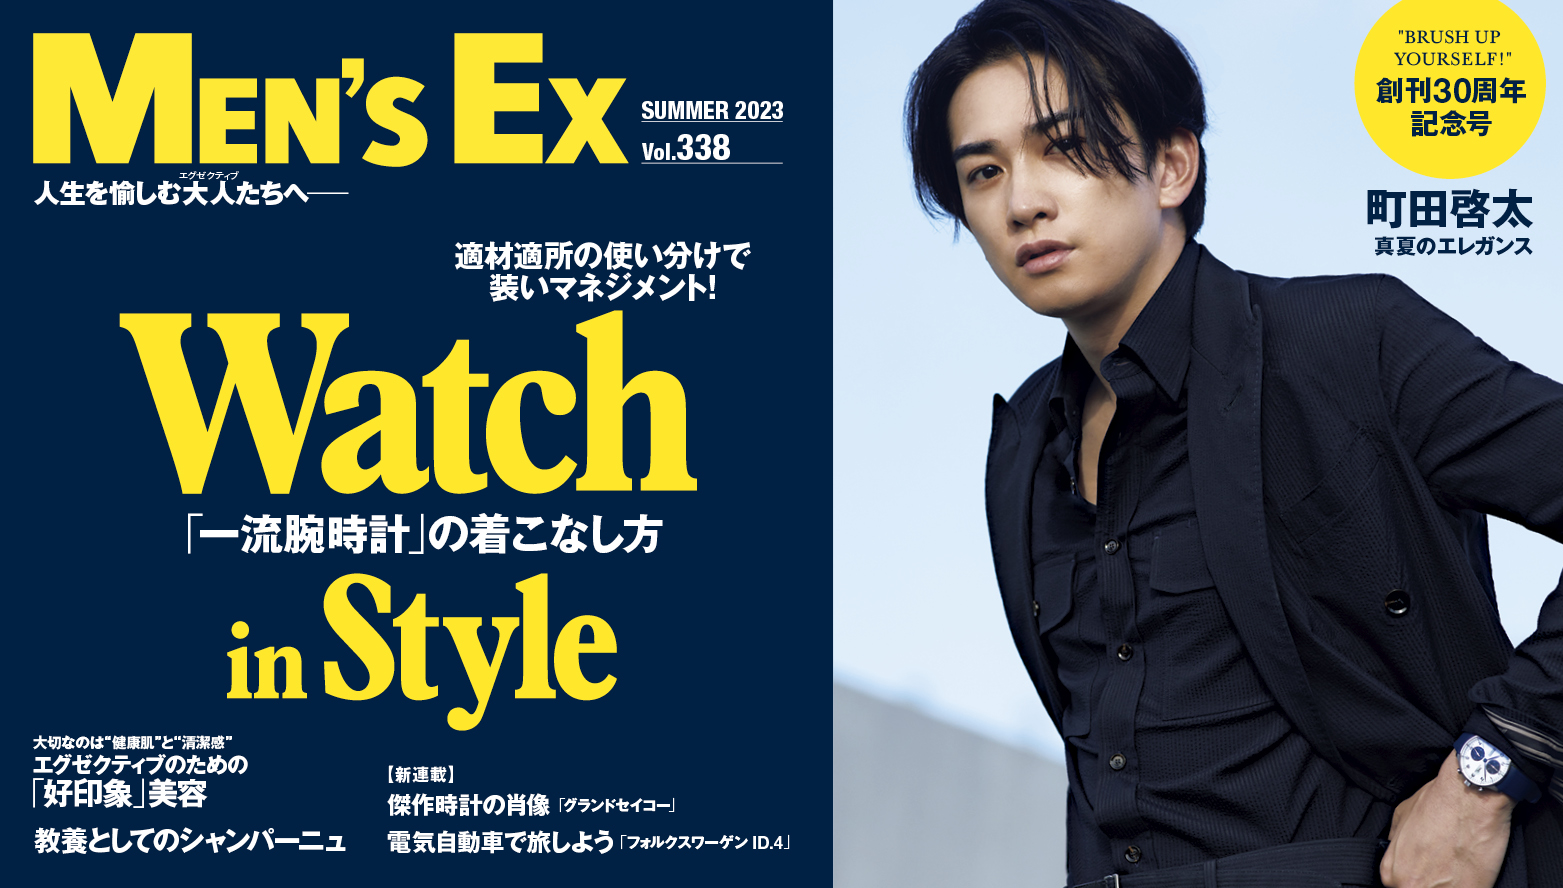 俳優・町田啓太が表紙を飾る『MEN'S EX』創刊30周年記念号 発売 